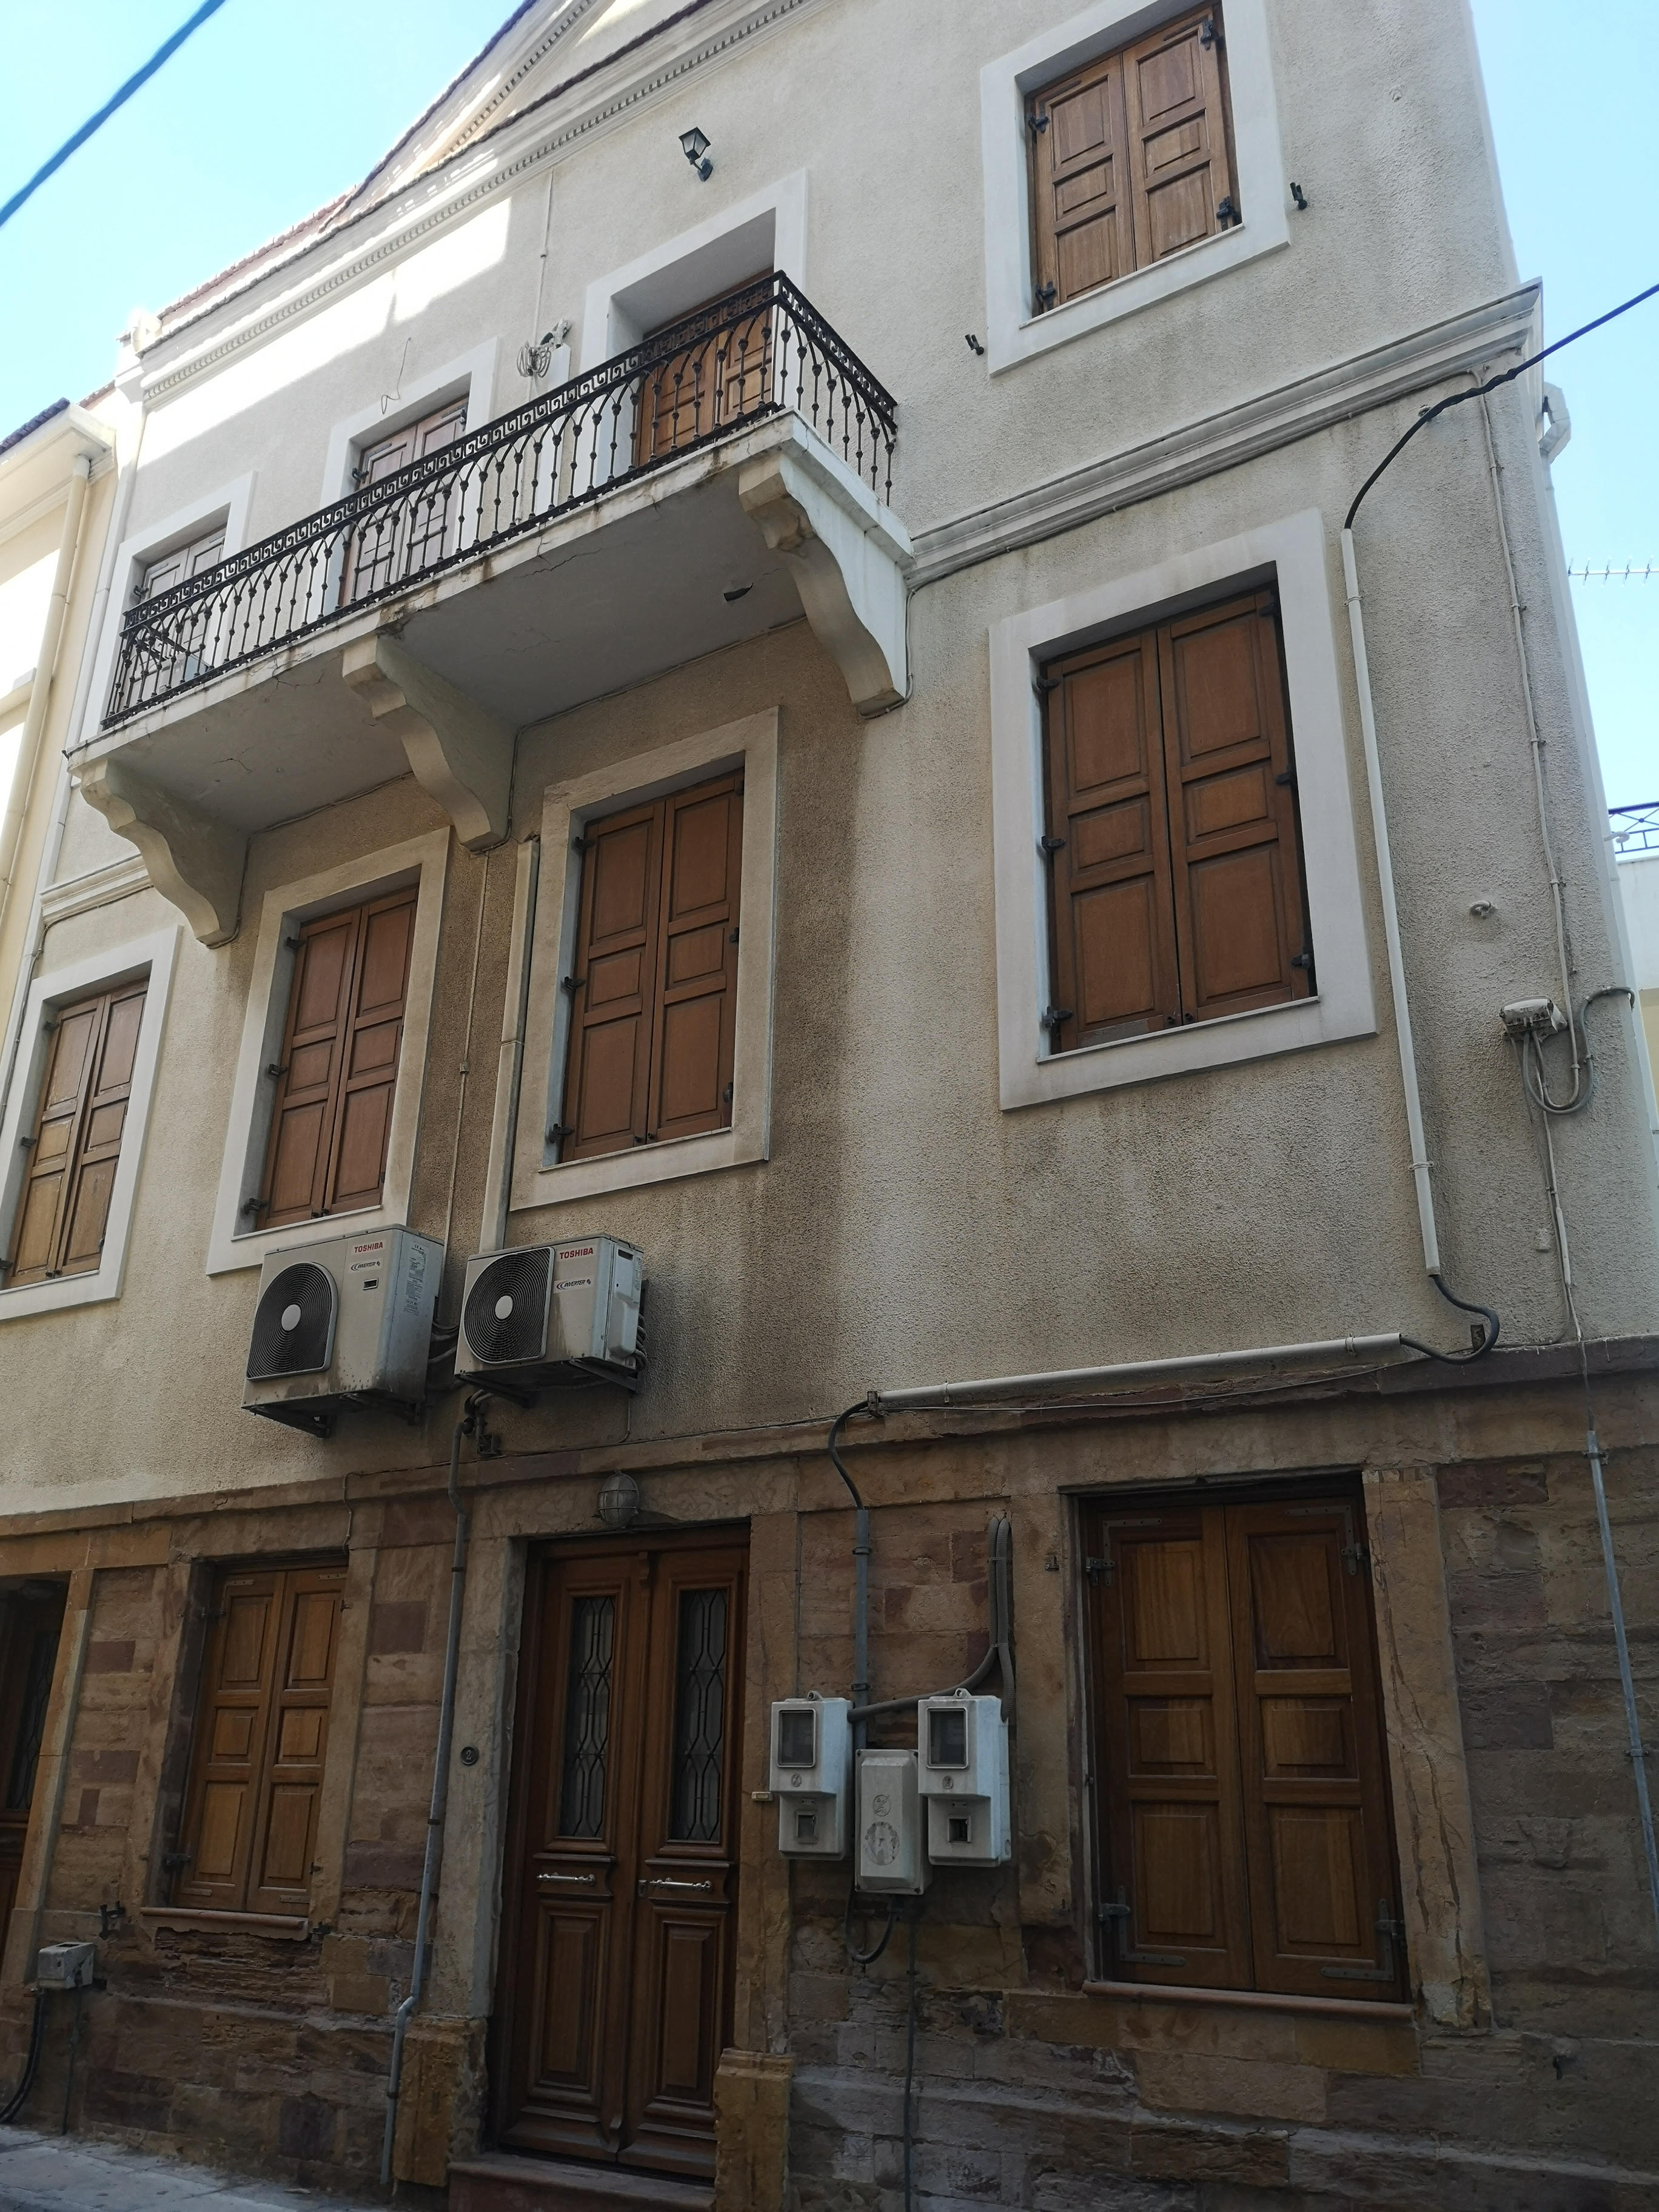 σπίτι που γεννήθηκε ο Μίκης Θεοδωράκης στη Χίο